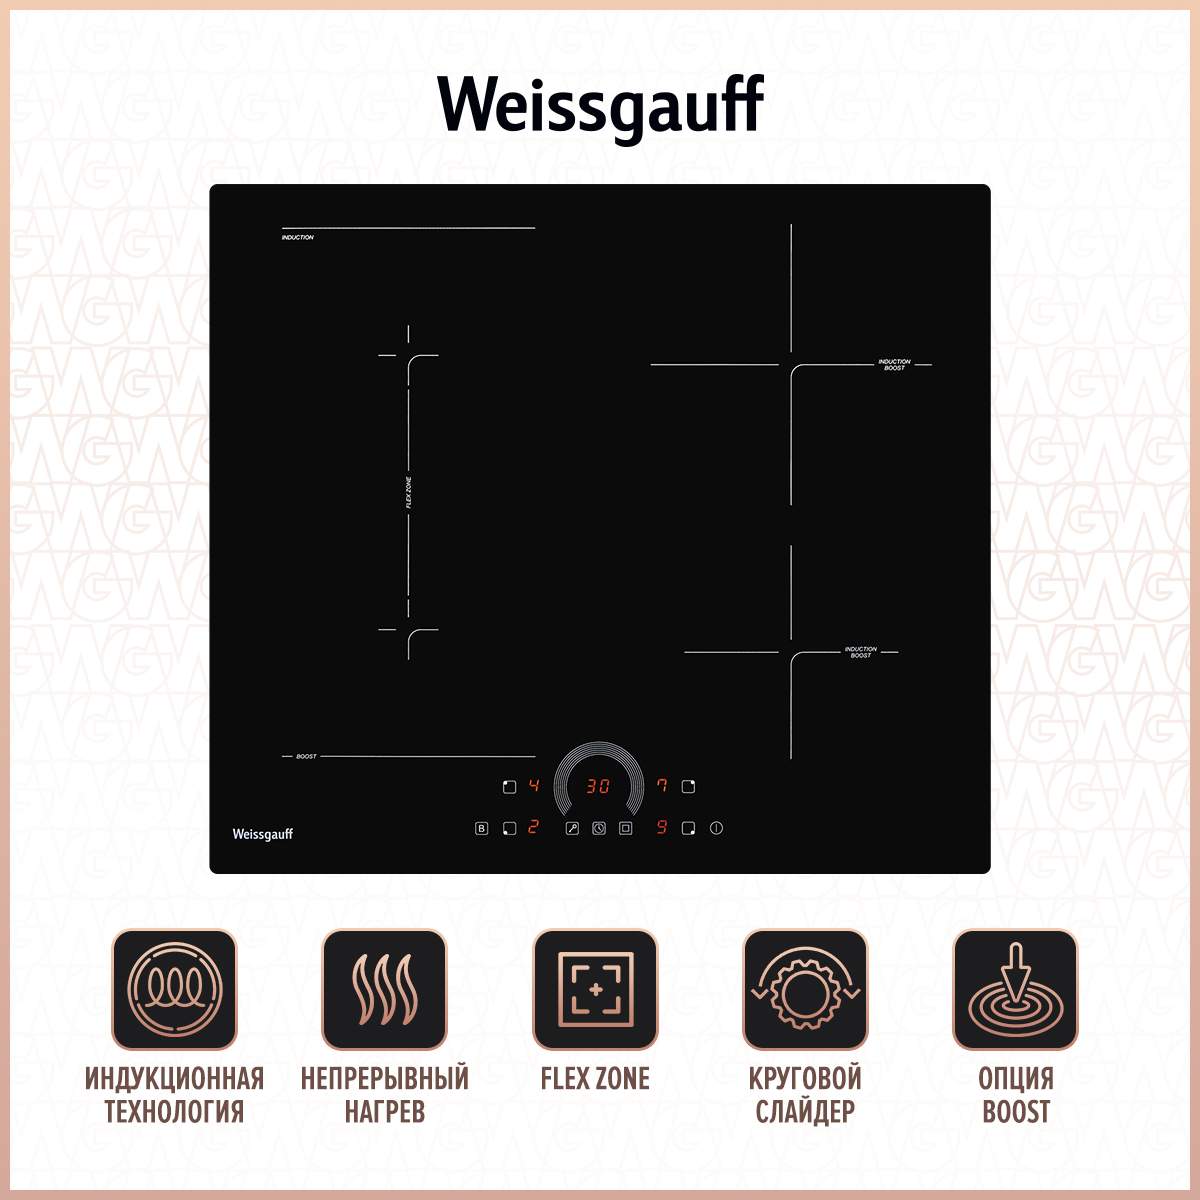 Встраиваемая варочная панель индукционная Weissgauff HI 643 BFZC черный, купить в Москве, цены в интернет-магазинах на Мегамаркет